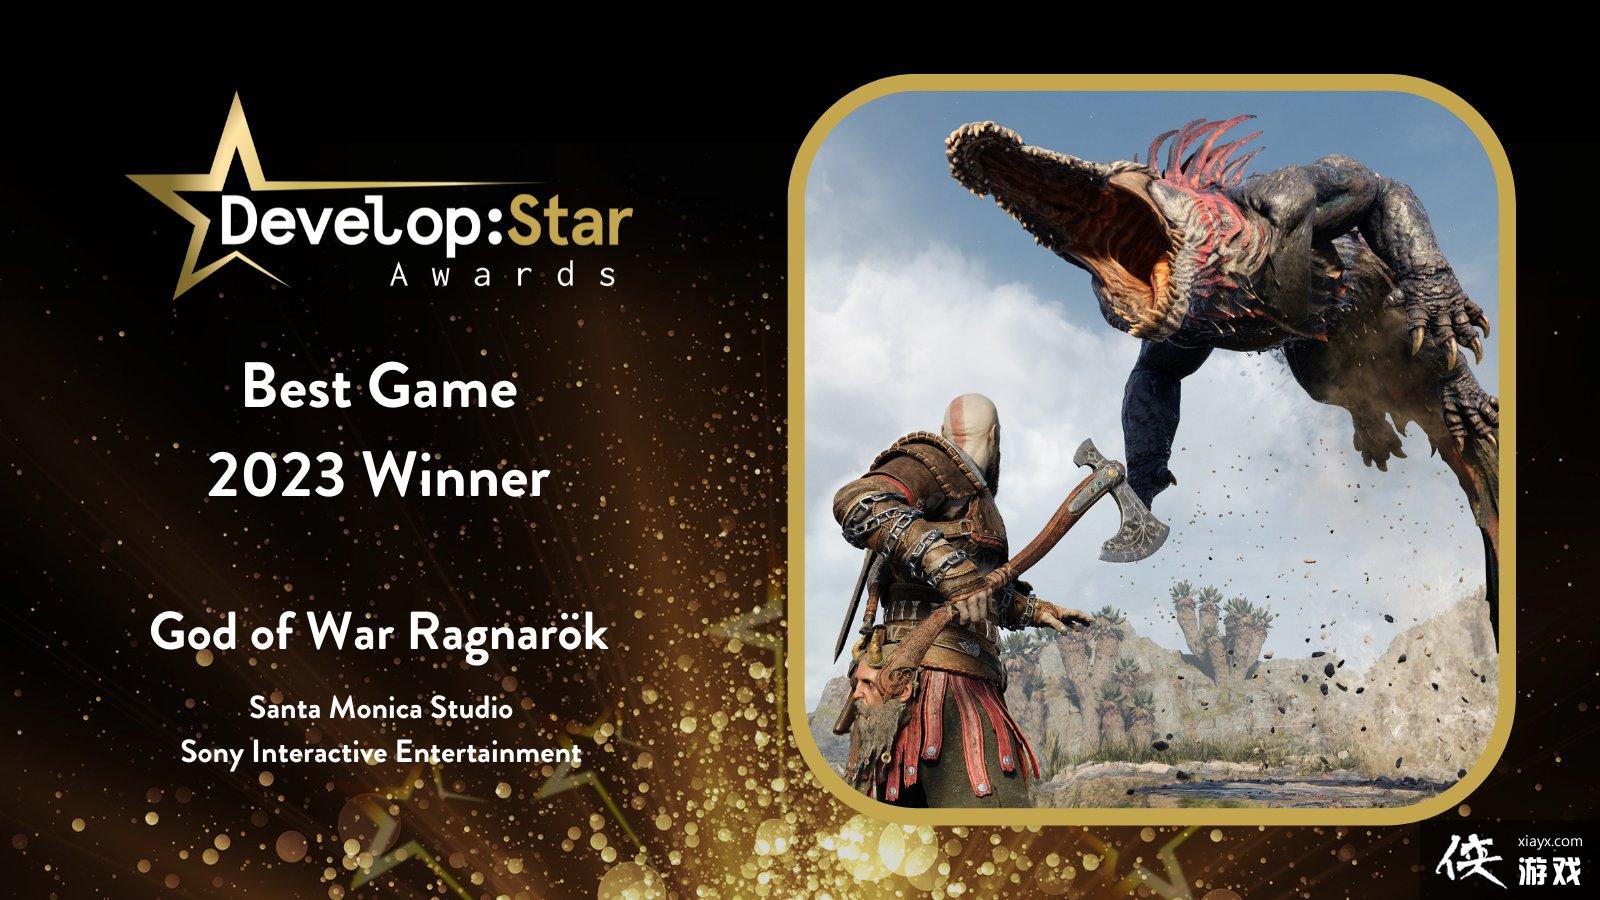 战神5赢得开发之星“最佳游戏”大奖